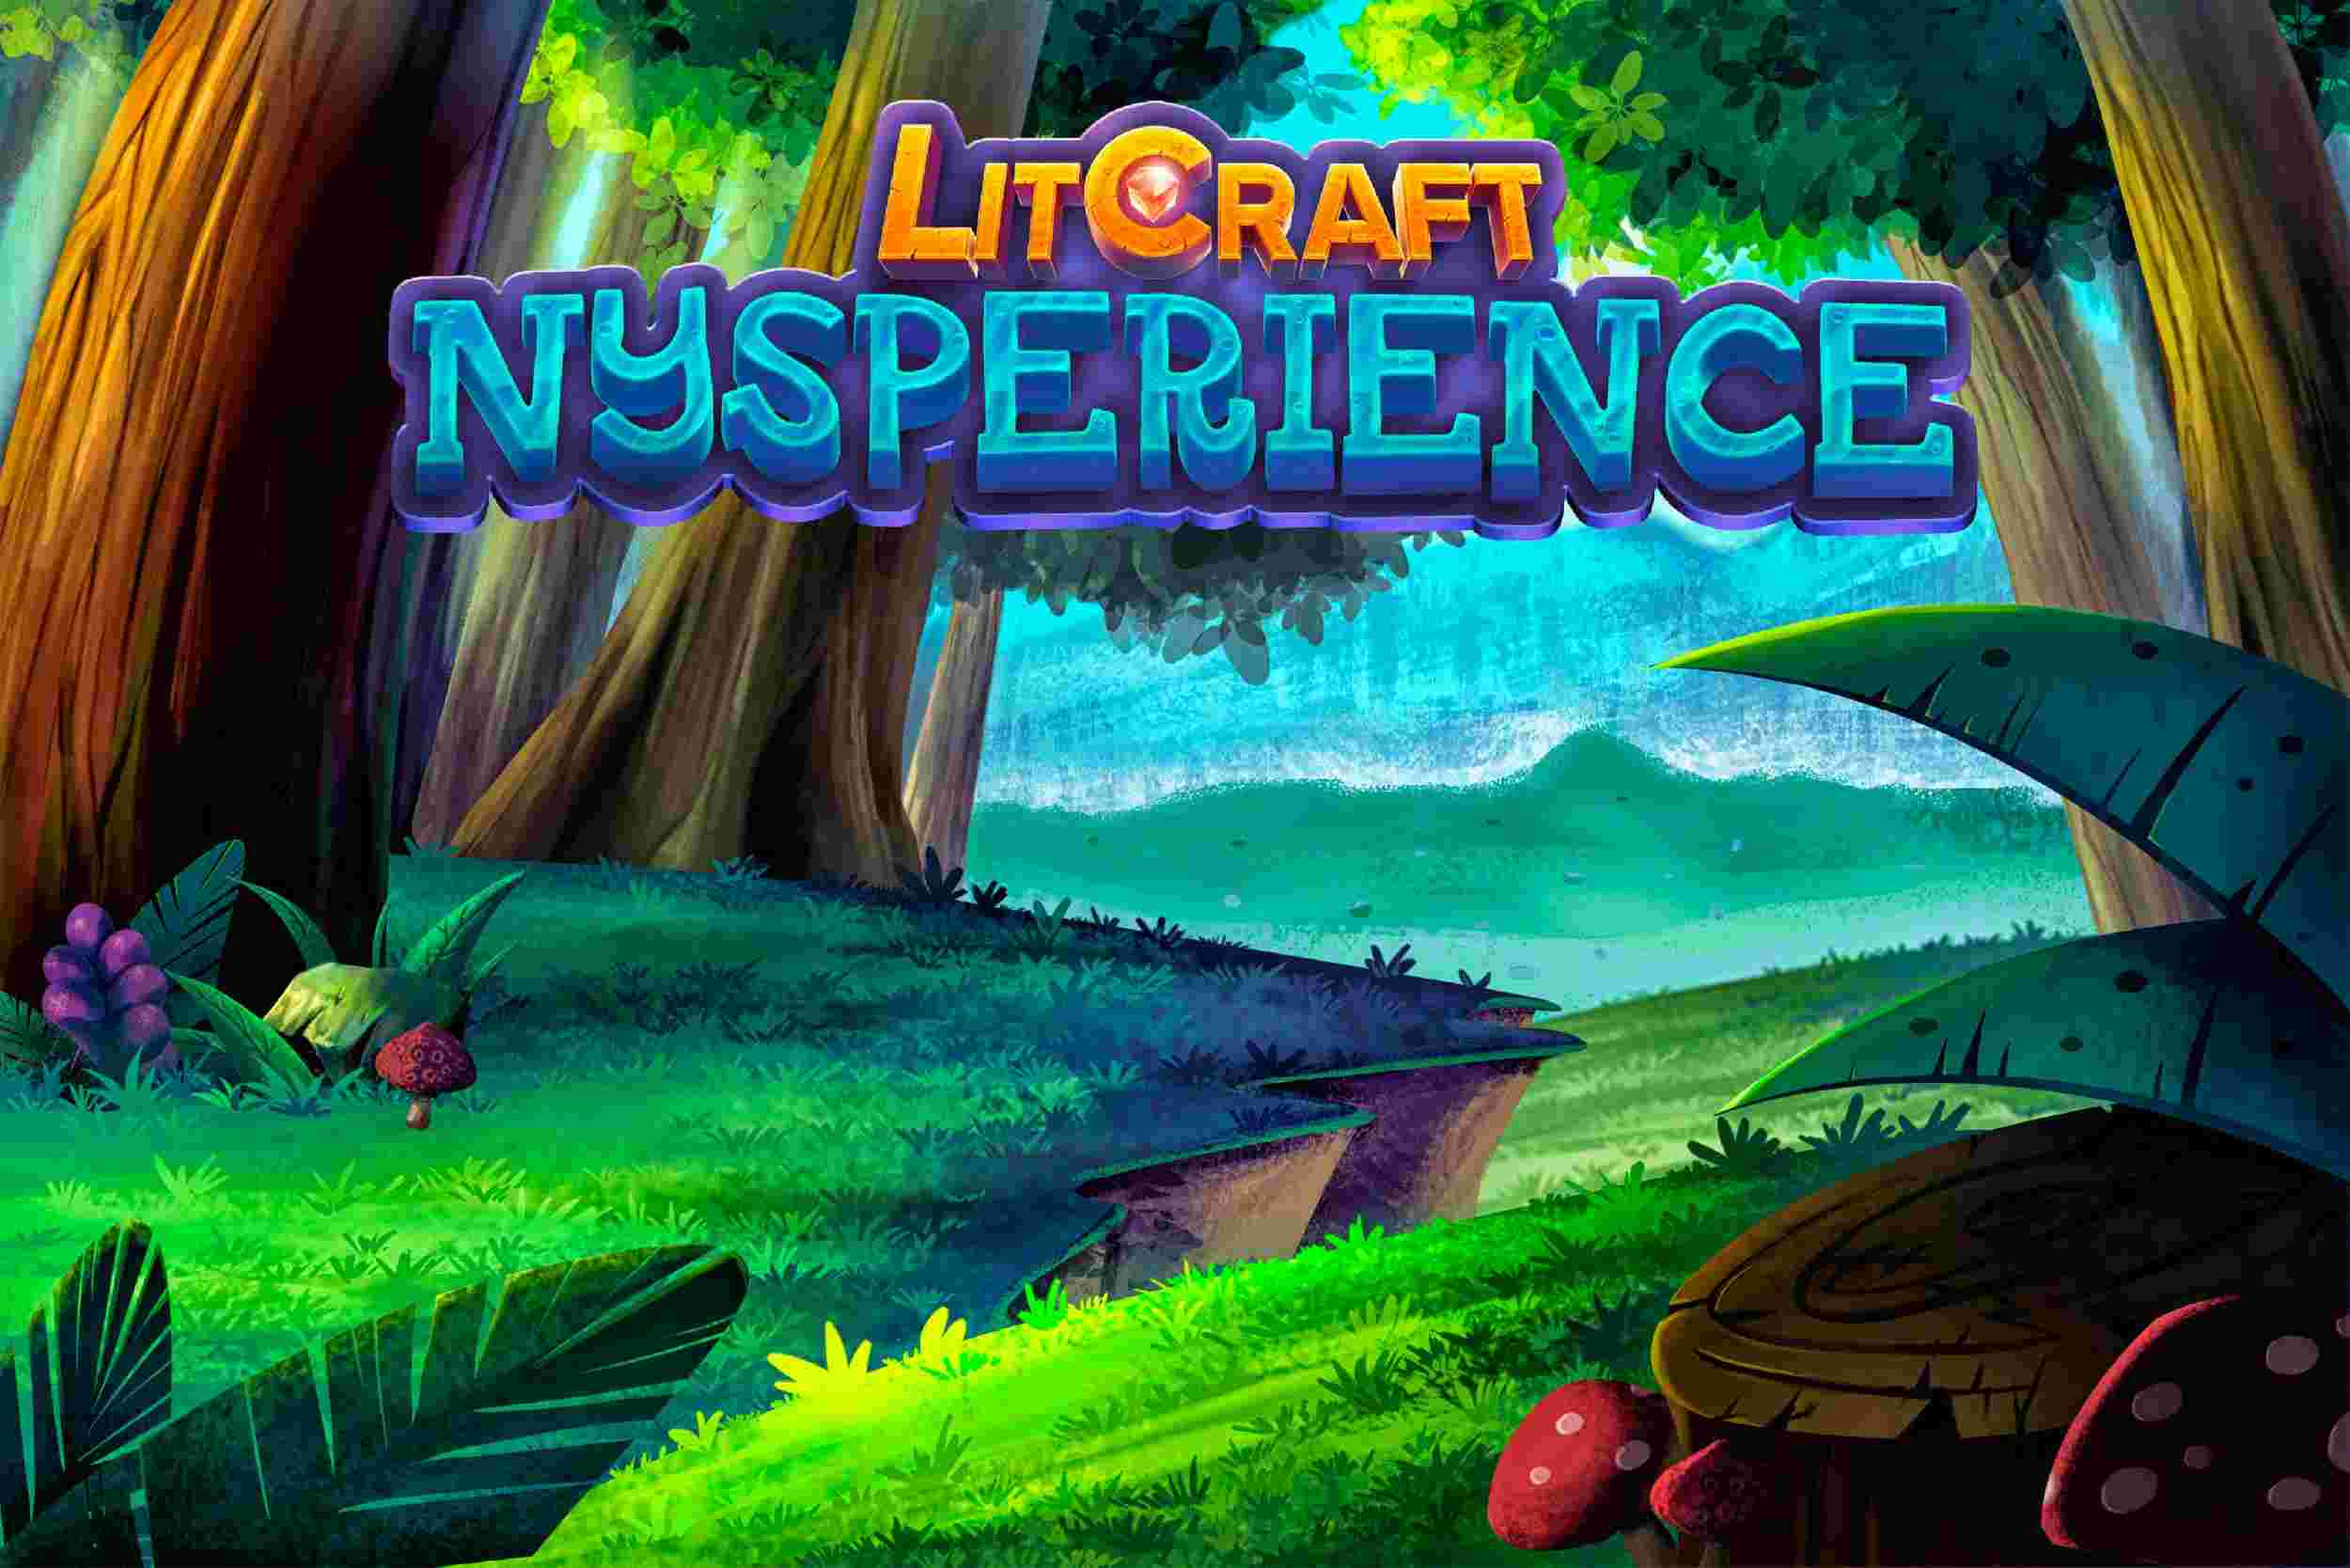 LitCraft: Nysperience – Spielrezension